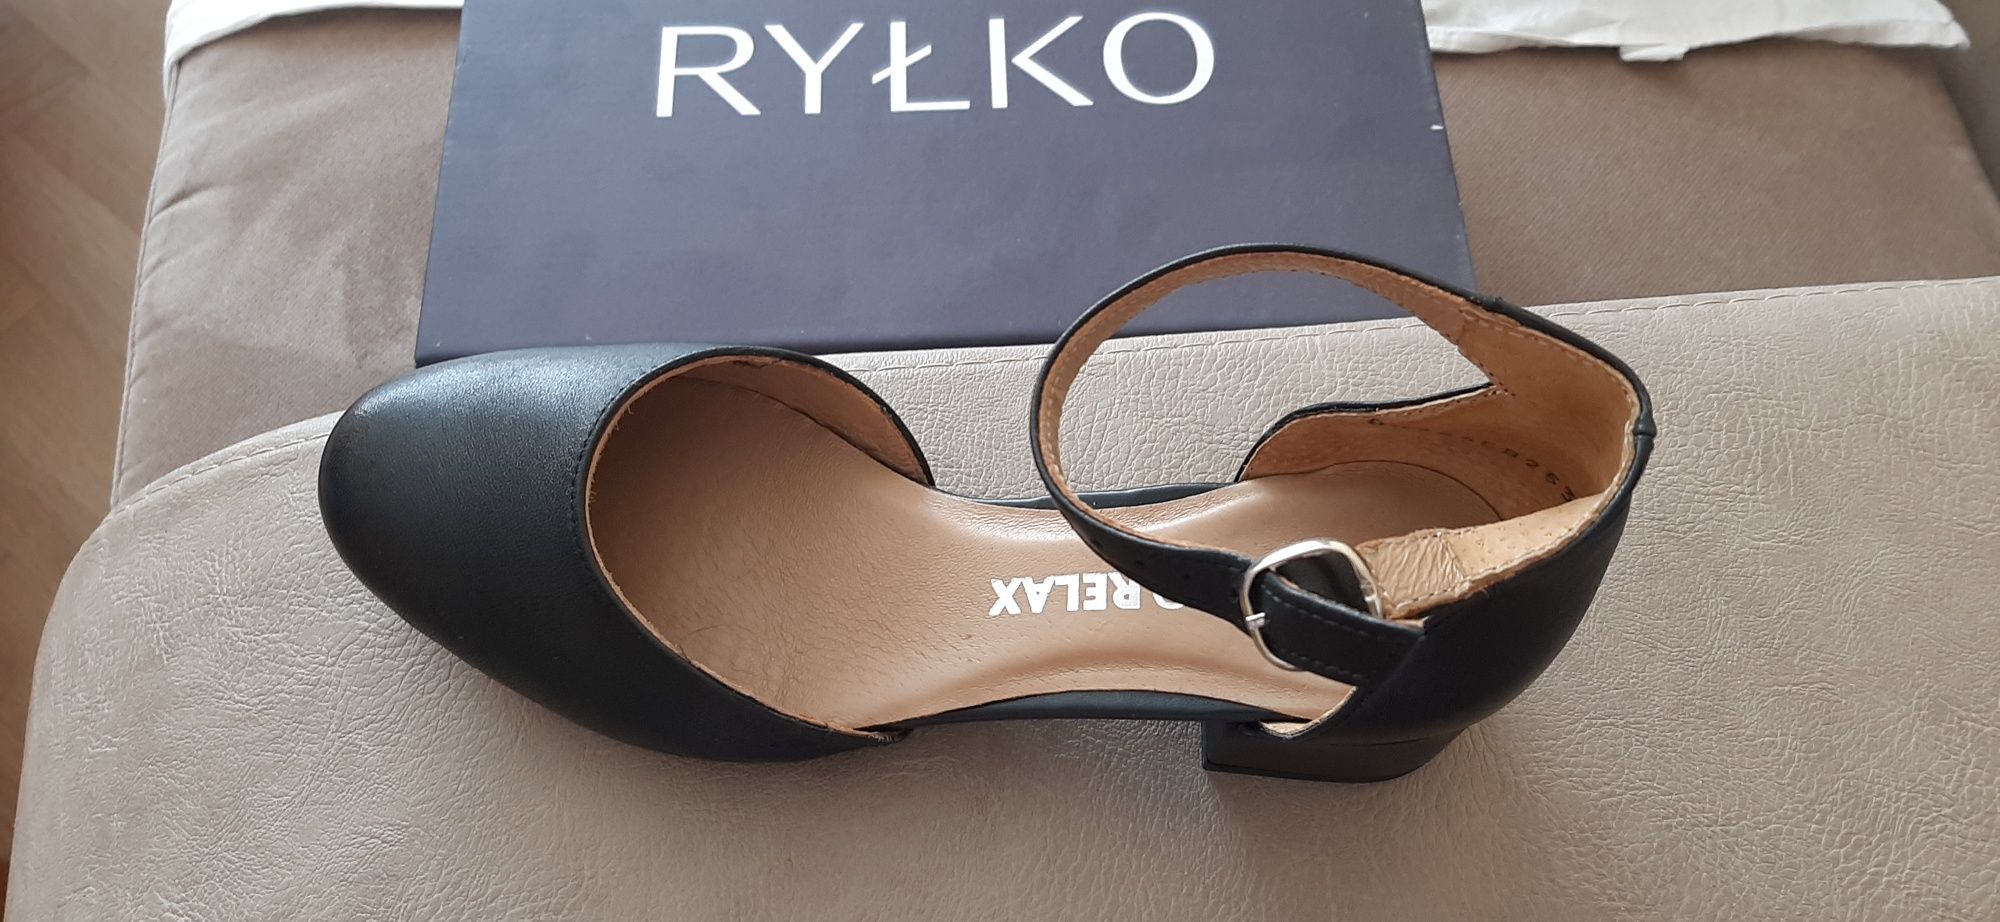 Обувки Rylko, нови, 36,5 номер